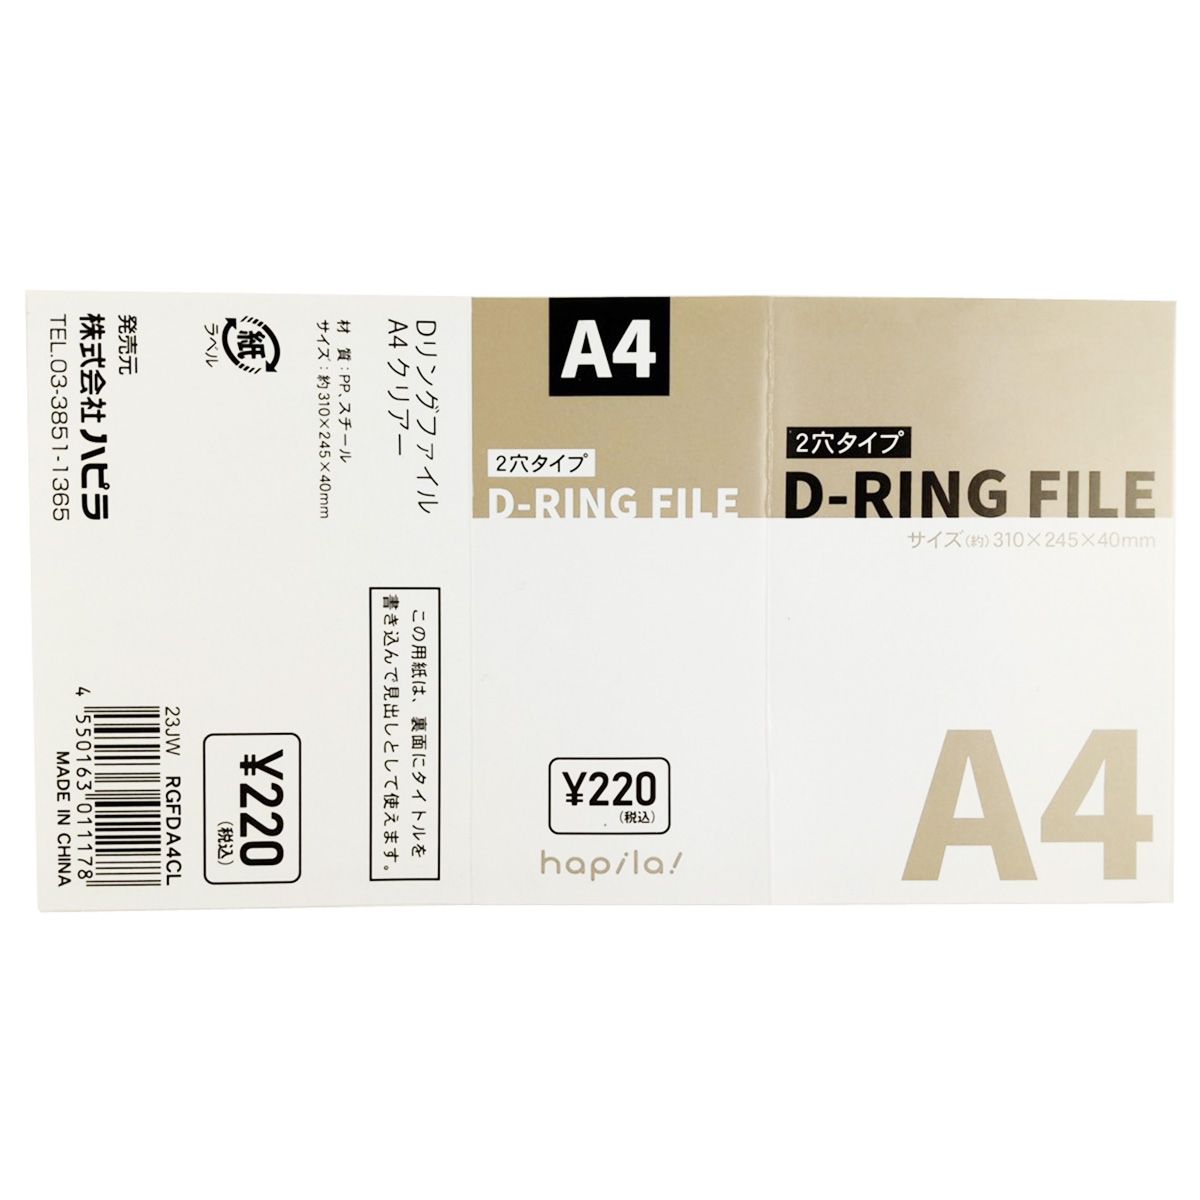 バインダー リング式ファイル D型リングファイル Dリングファイル  A4 クリア 341296